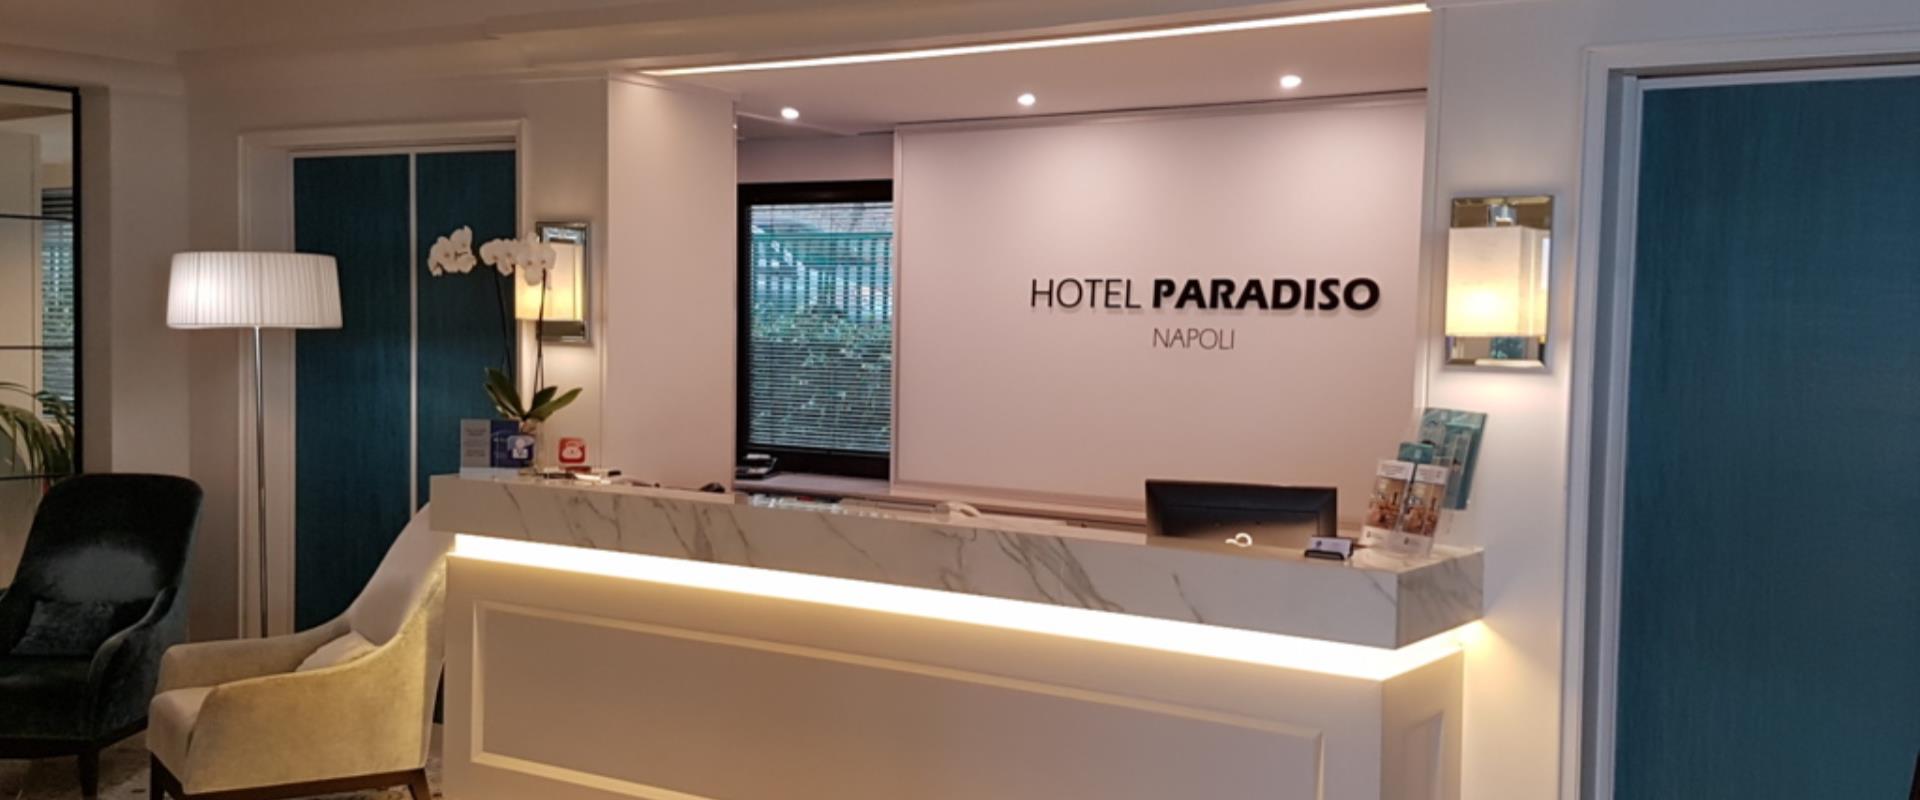 Réception hôtel Paradiso Naples